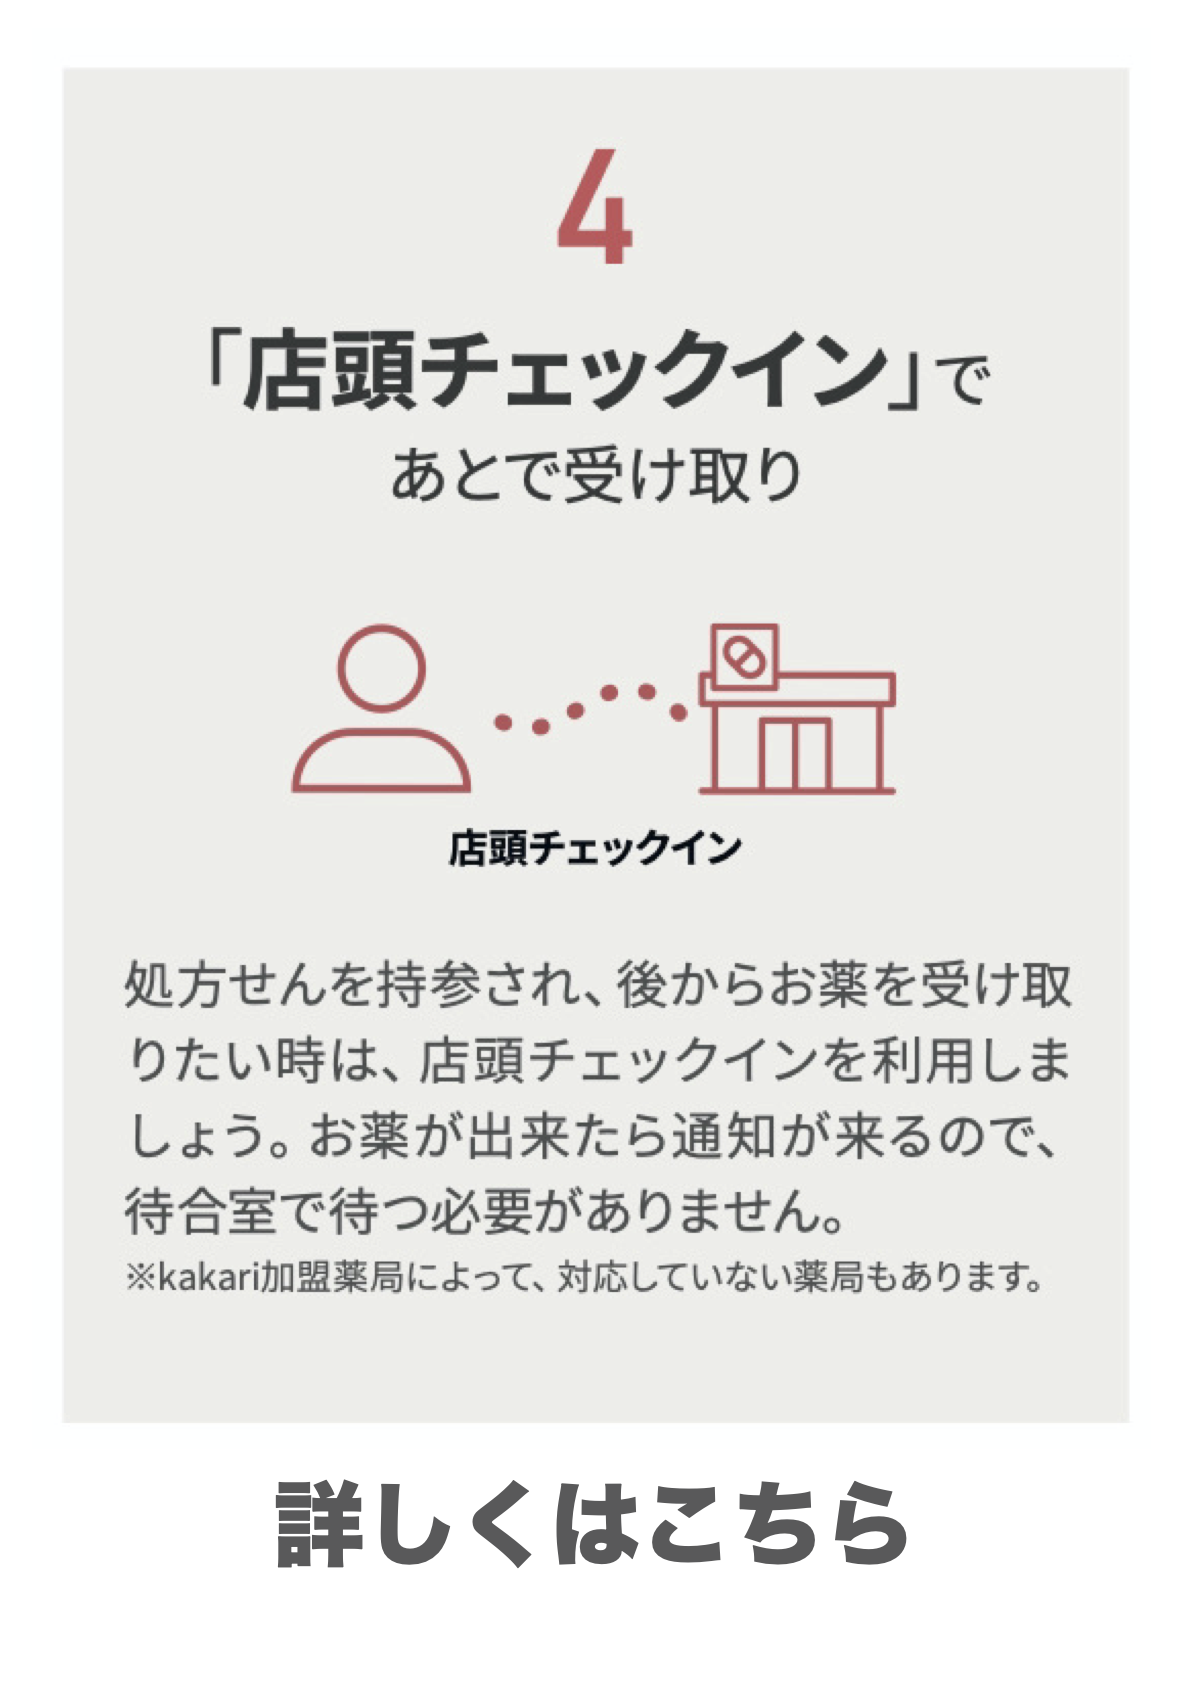 処方せん送信&お薬手帳アプリ(Kakari)の機能4